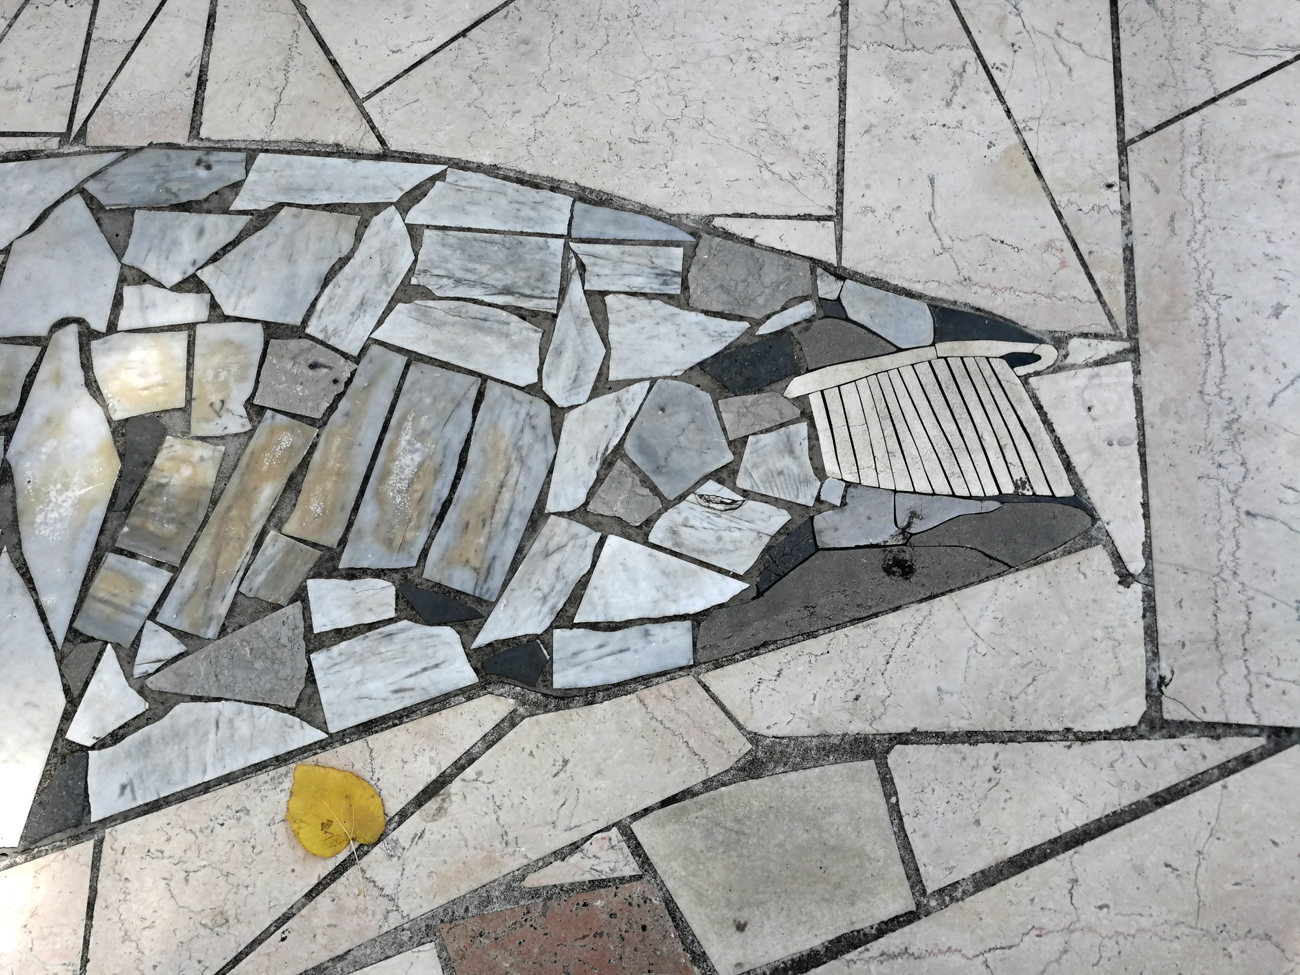   Particolare della pavimentazione/mosaico
